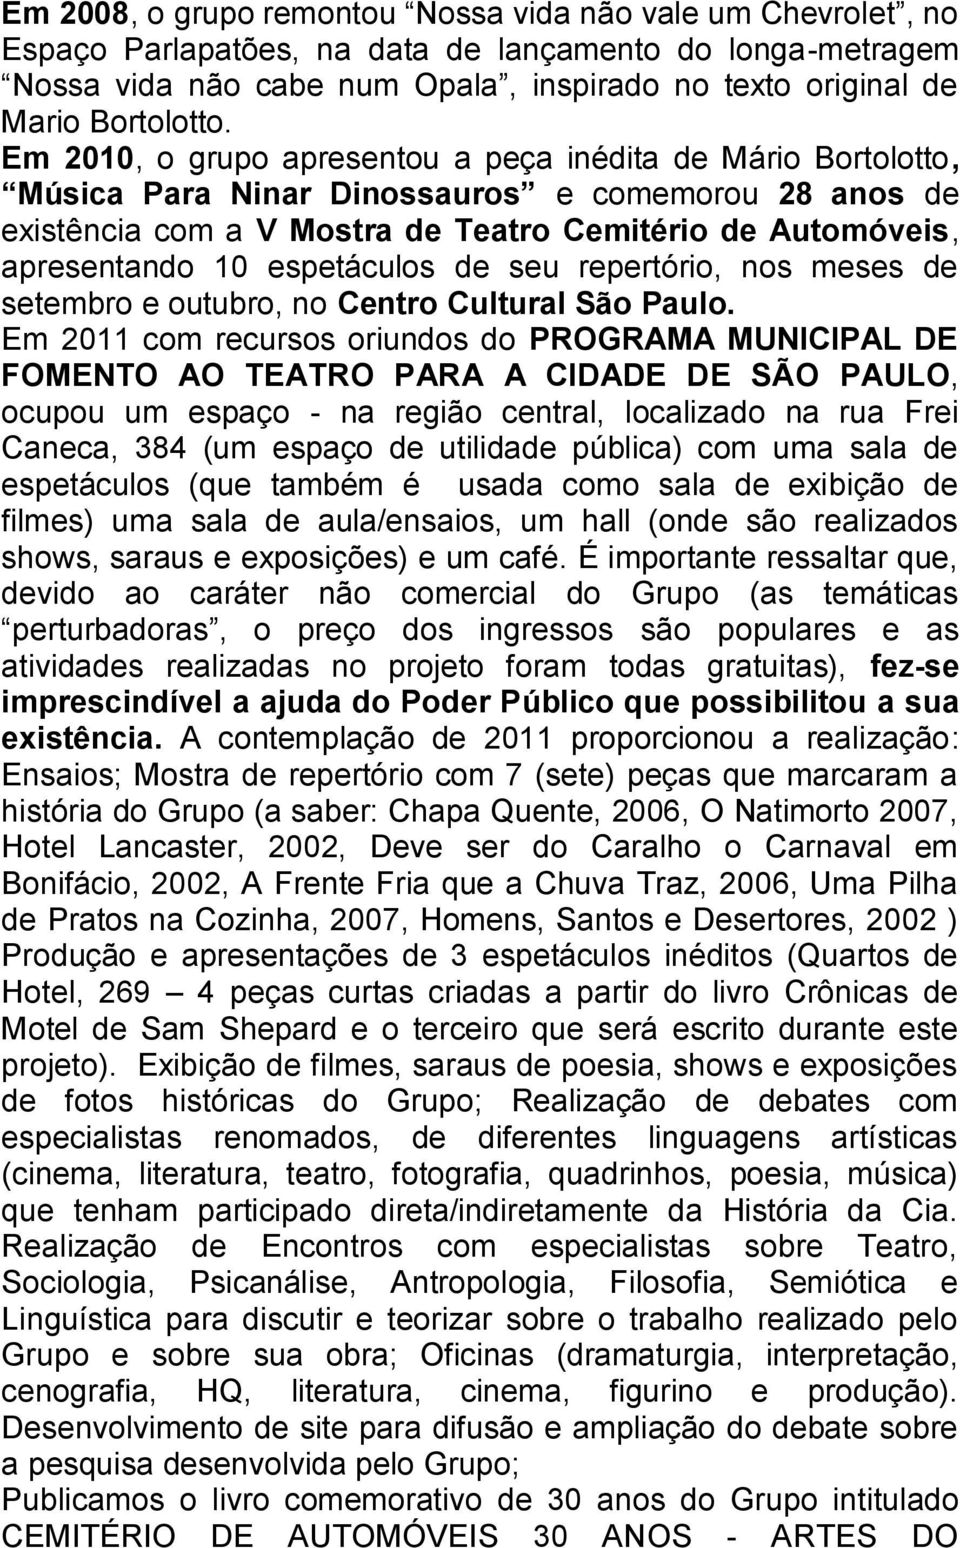 Em 2010, o grupo apresentou a peça inédita de Mário Bortolotto, Música Para Ninar Dinossauros e comemorou 28 anos de existência com a V Mostra de Teatro Cemitério de Automóveis, apresentando 10